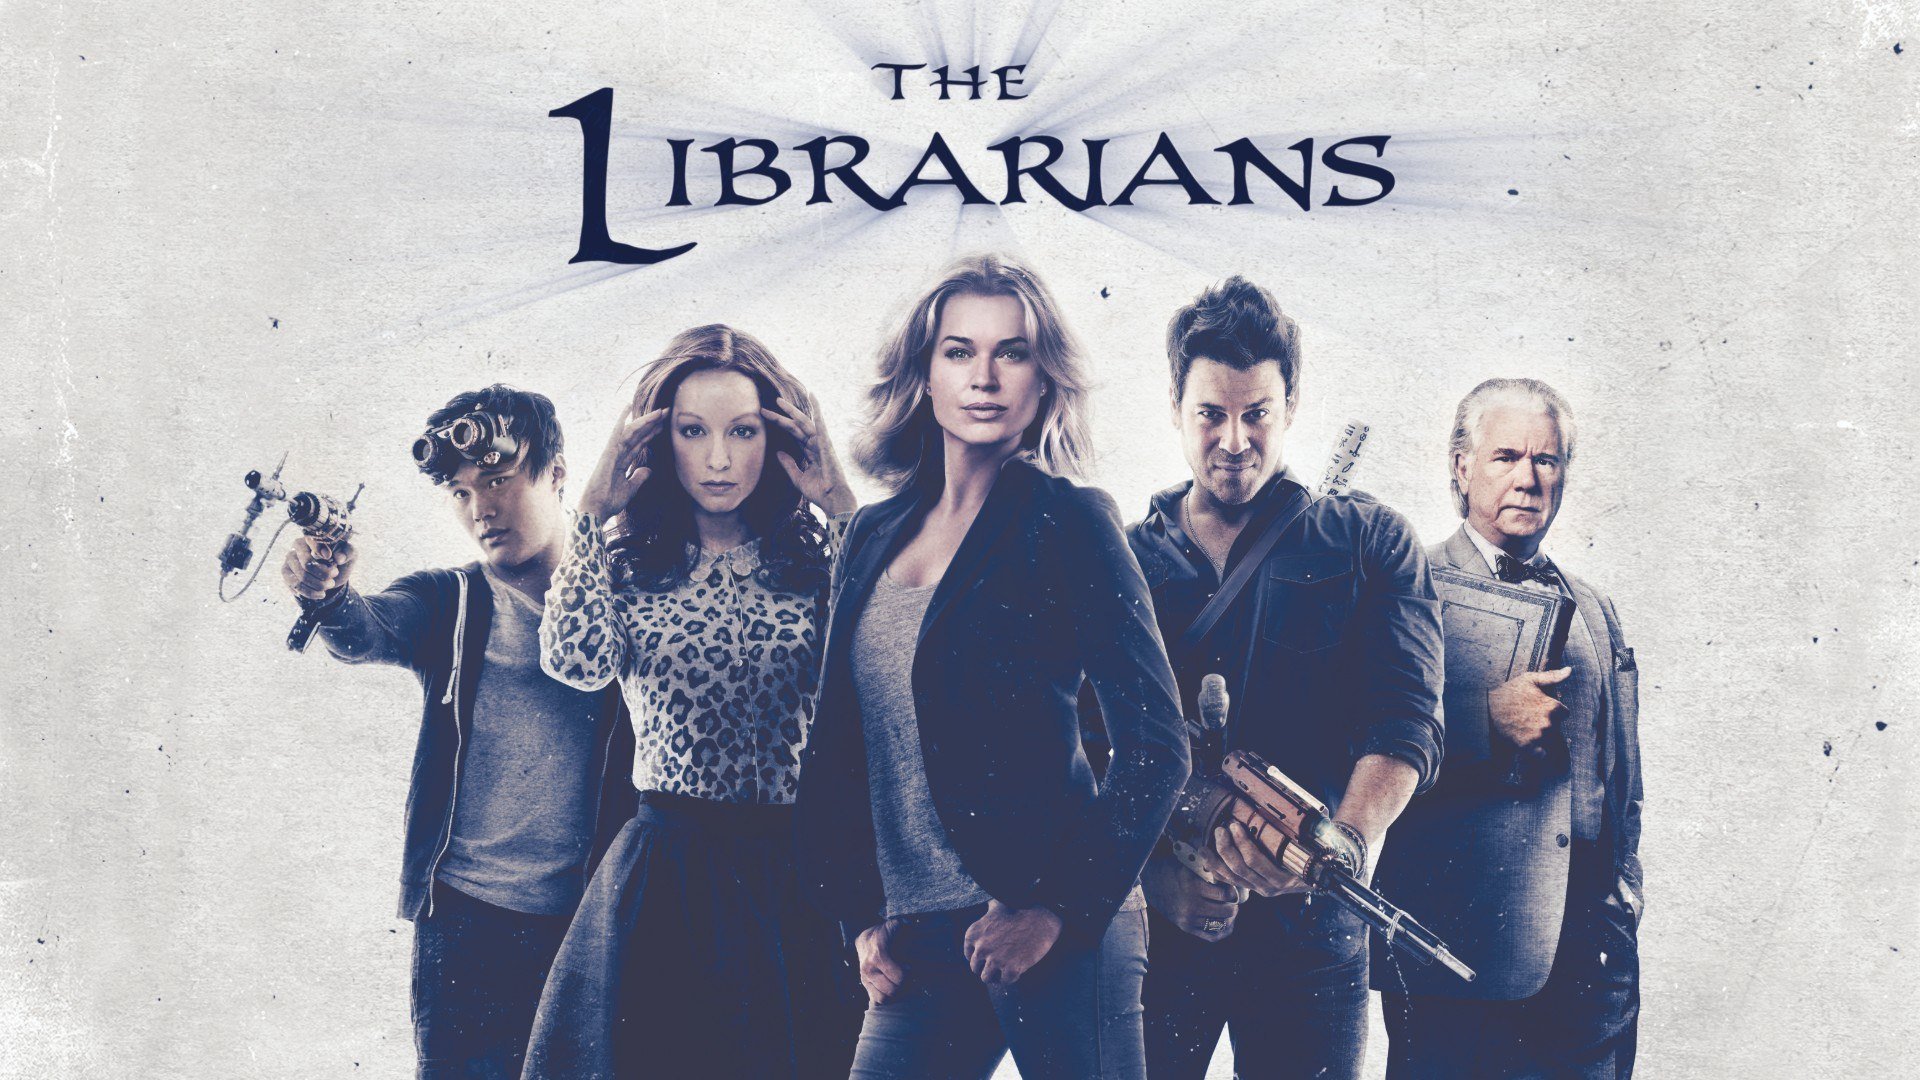 The Librarians - Quootip